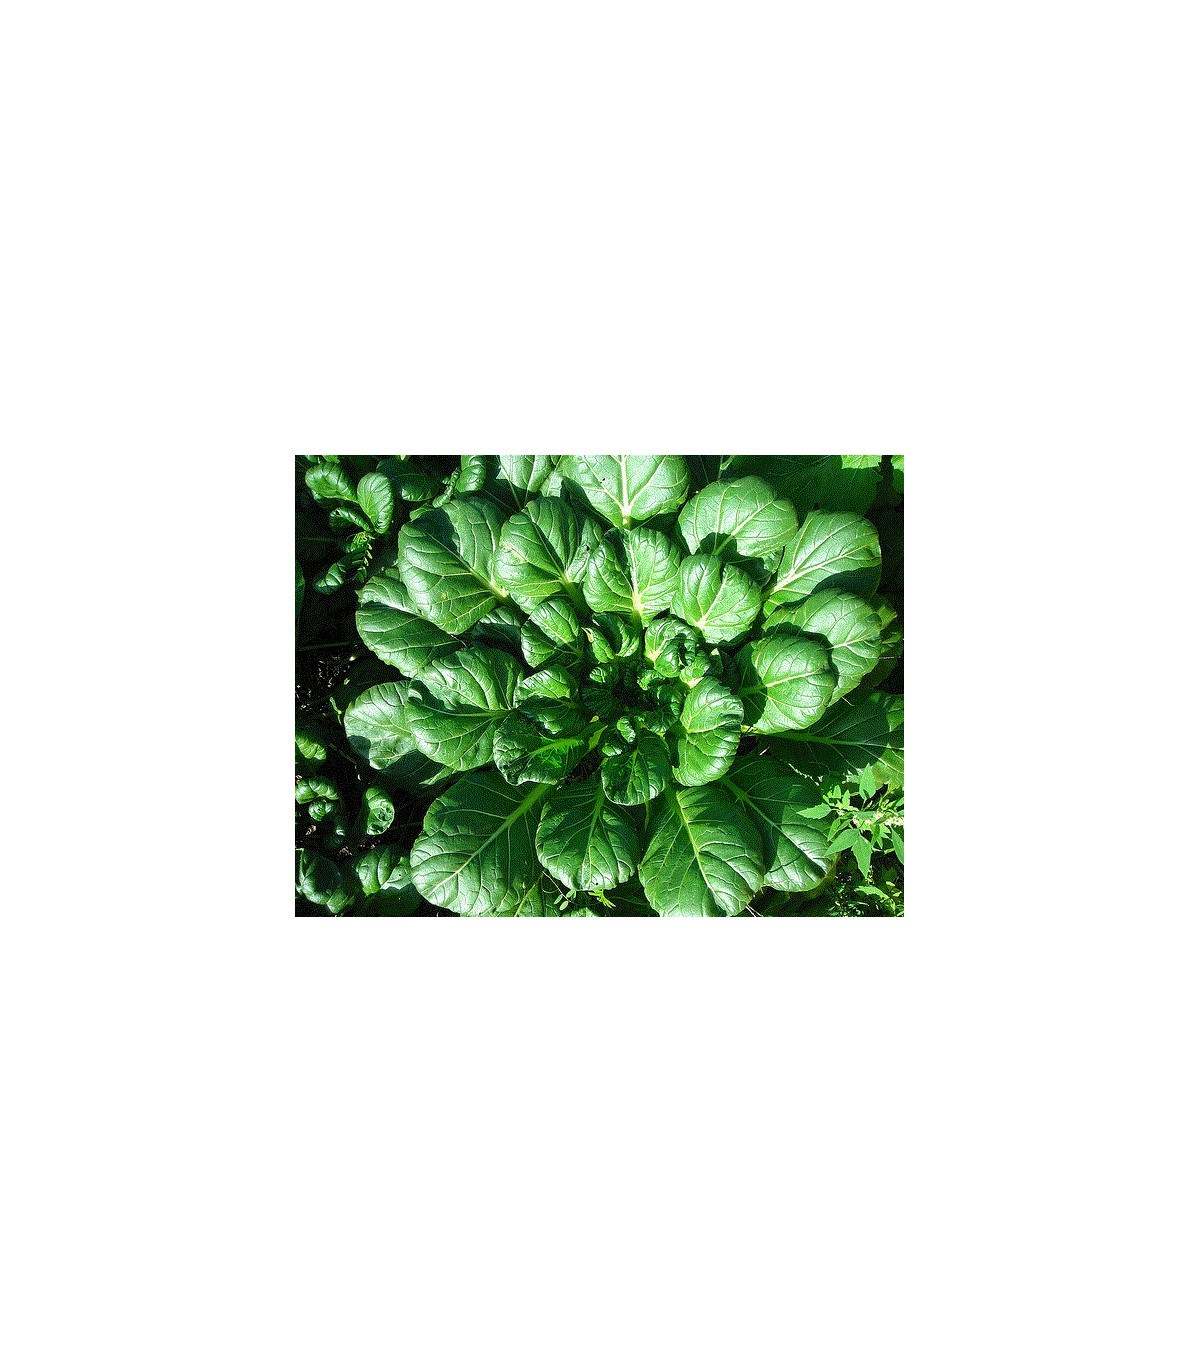 Semínka tatsoi - Brassica rapa var rosularis - Asijská zelenina - prodej semen asijské zeleniny - 100 ks